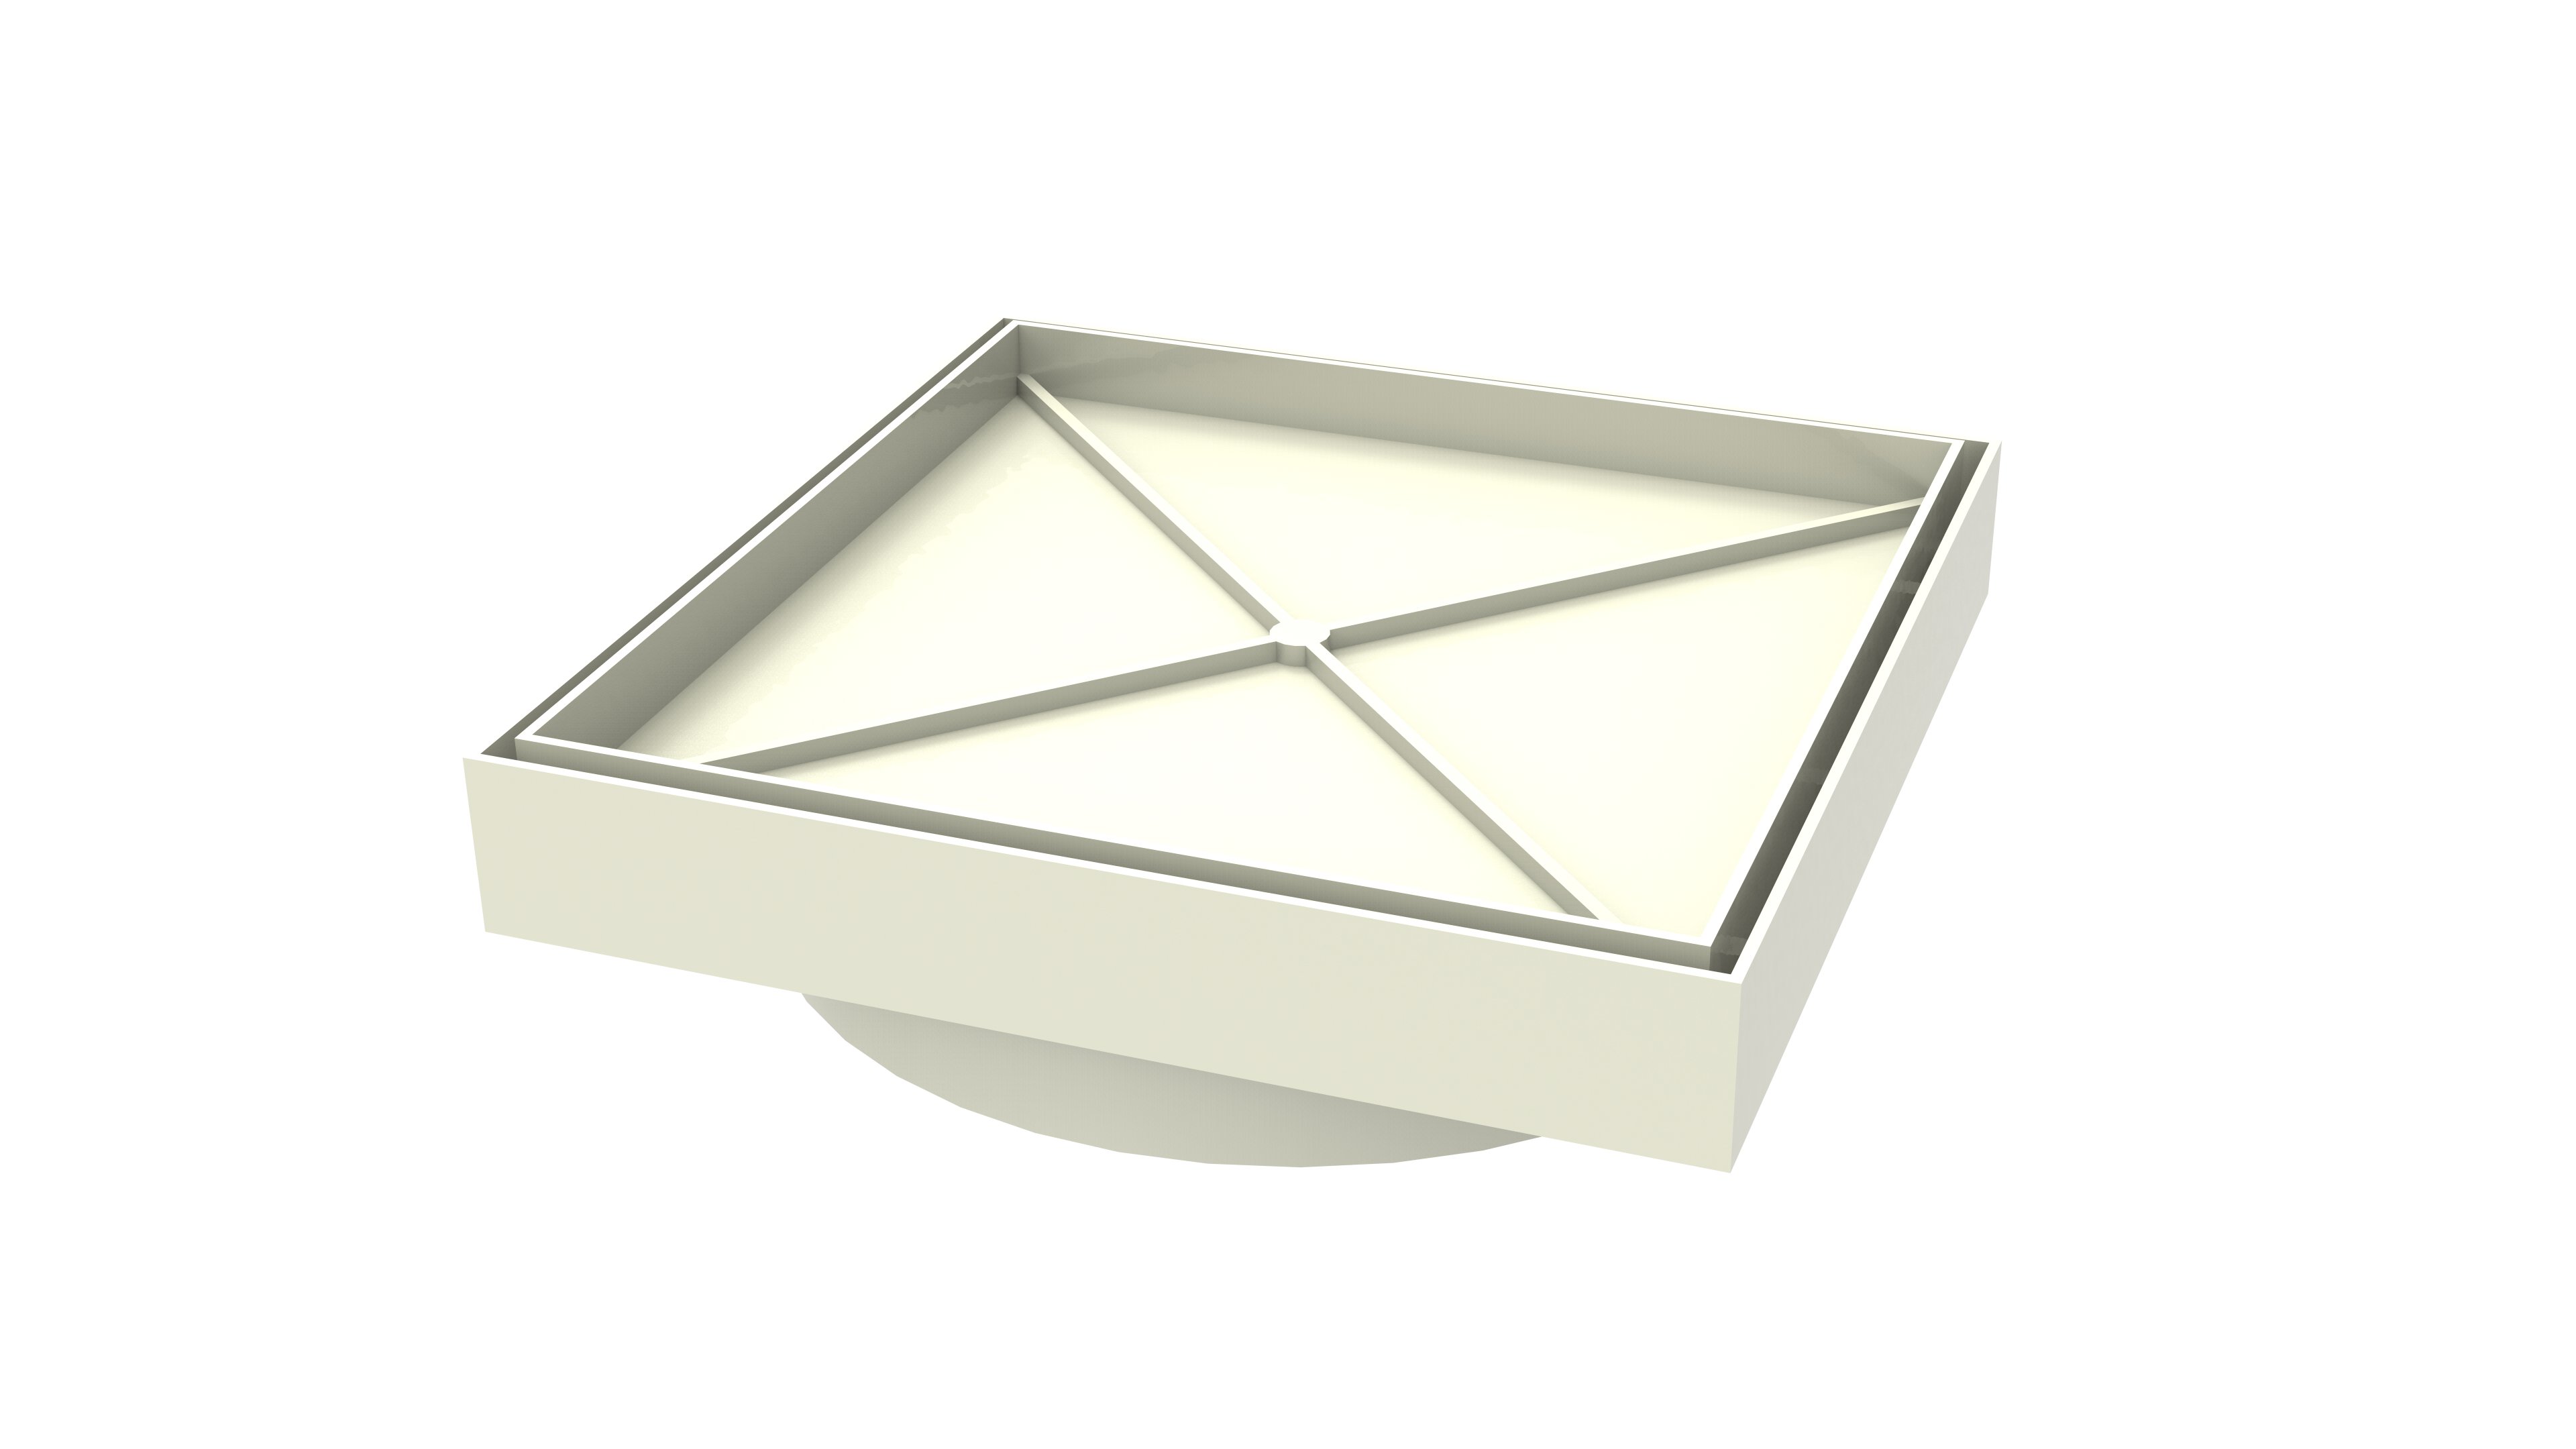 Ralo Invisível Sifonado 15x15 Branco Banheiro modelo Porcelanato Colar Piso com Caixa Sifonada 100 - - 6